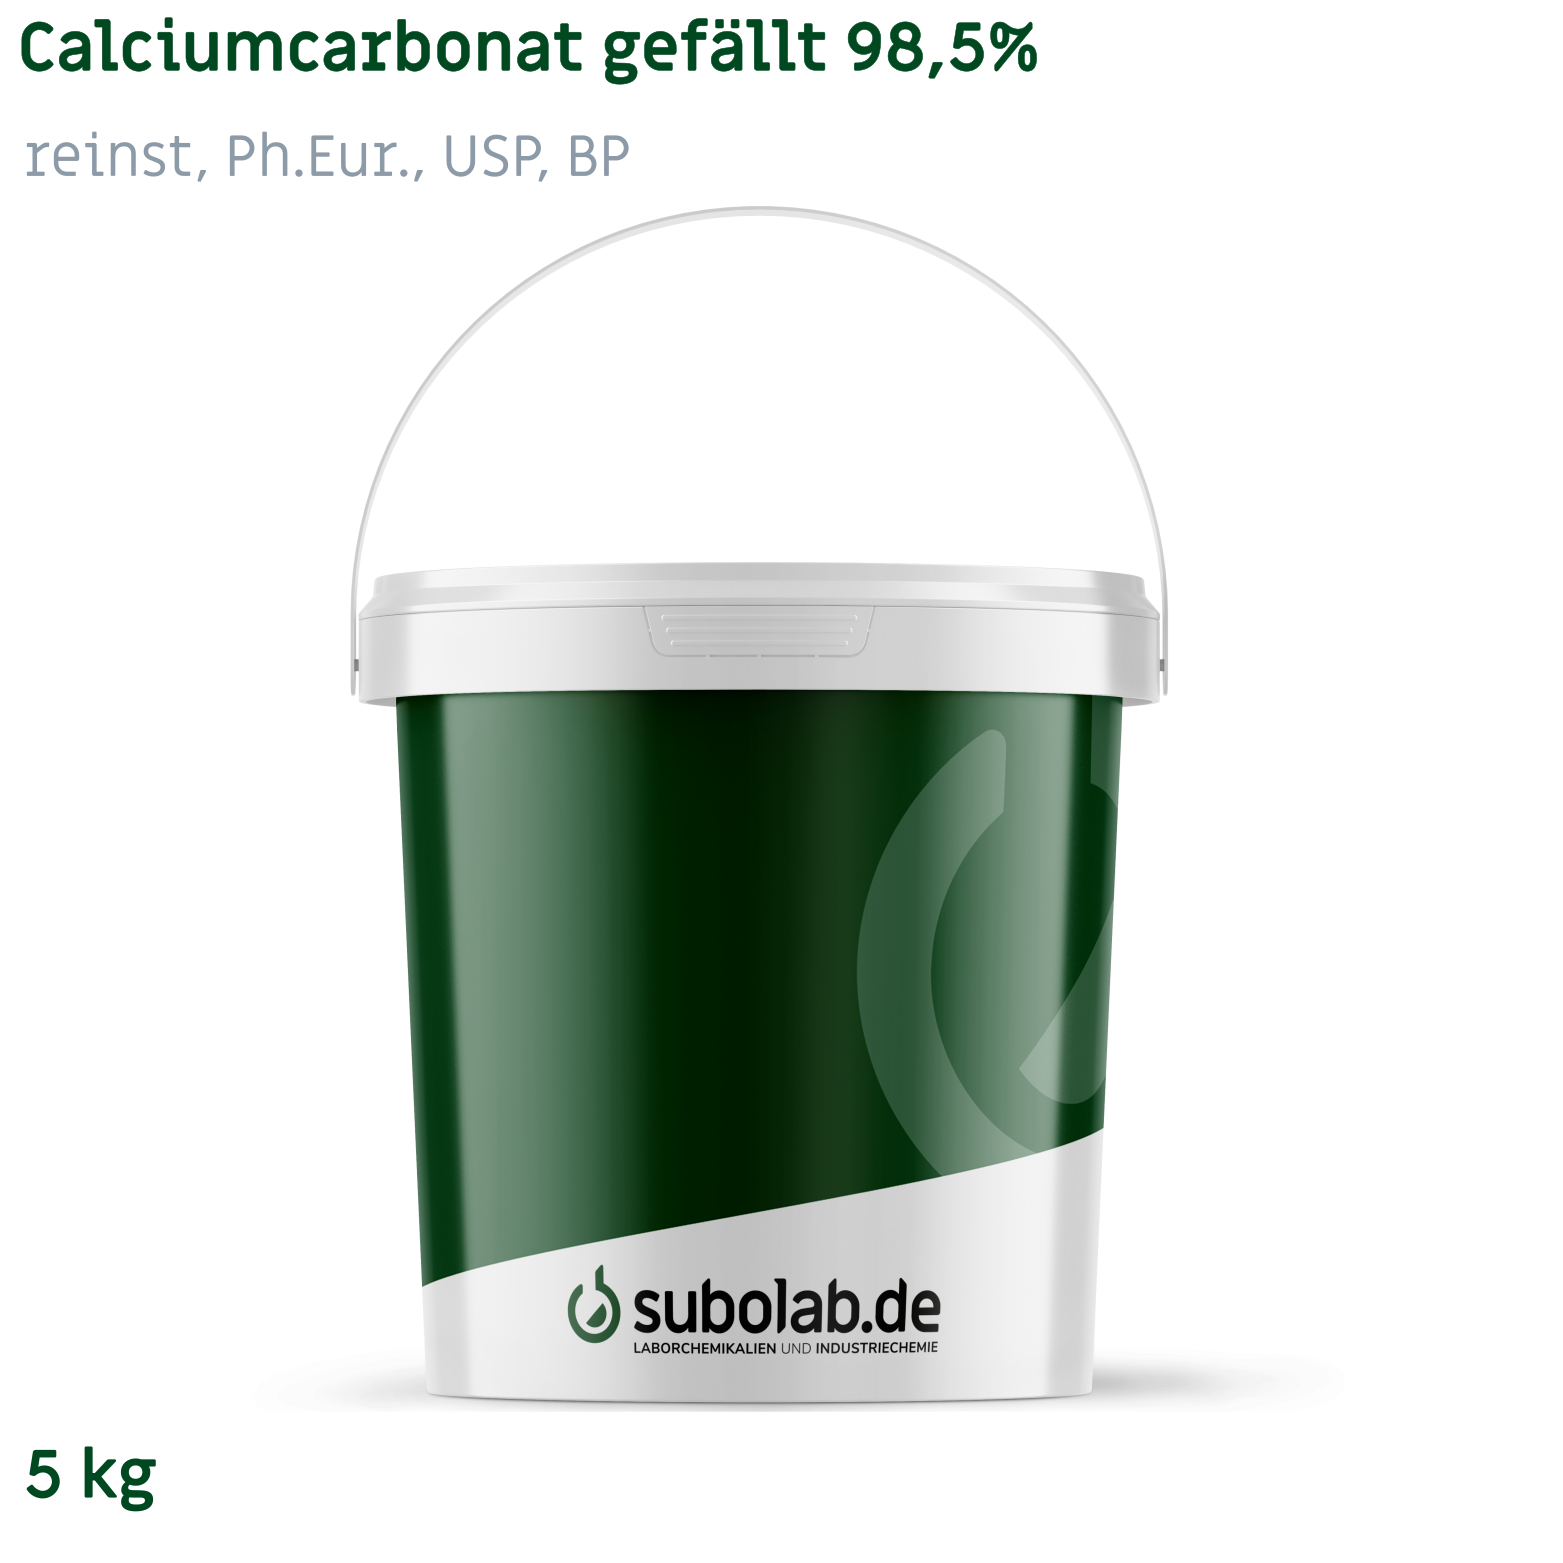 Bild von Calciumcarbonat gefällt 98,5% reinst, Ph.Eur., USP, BP (5 kg)